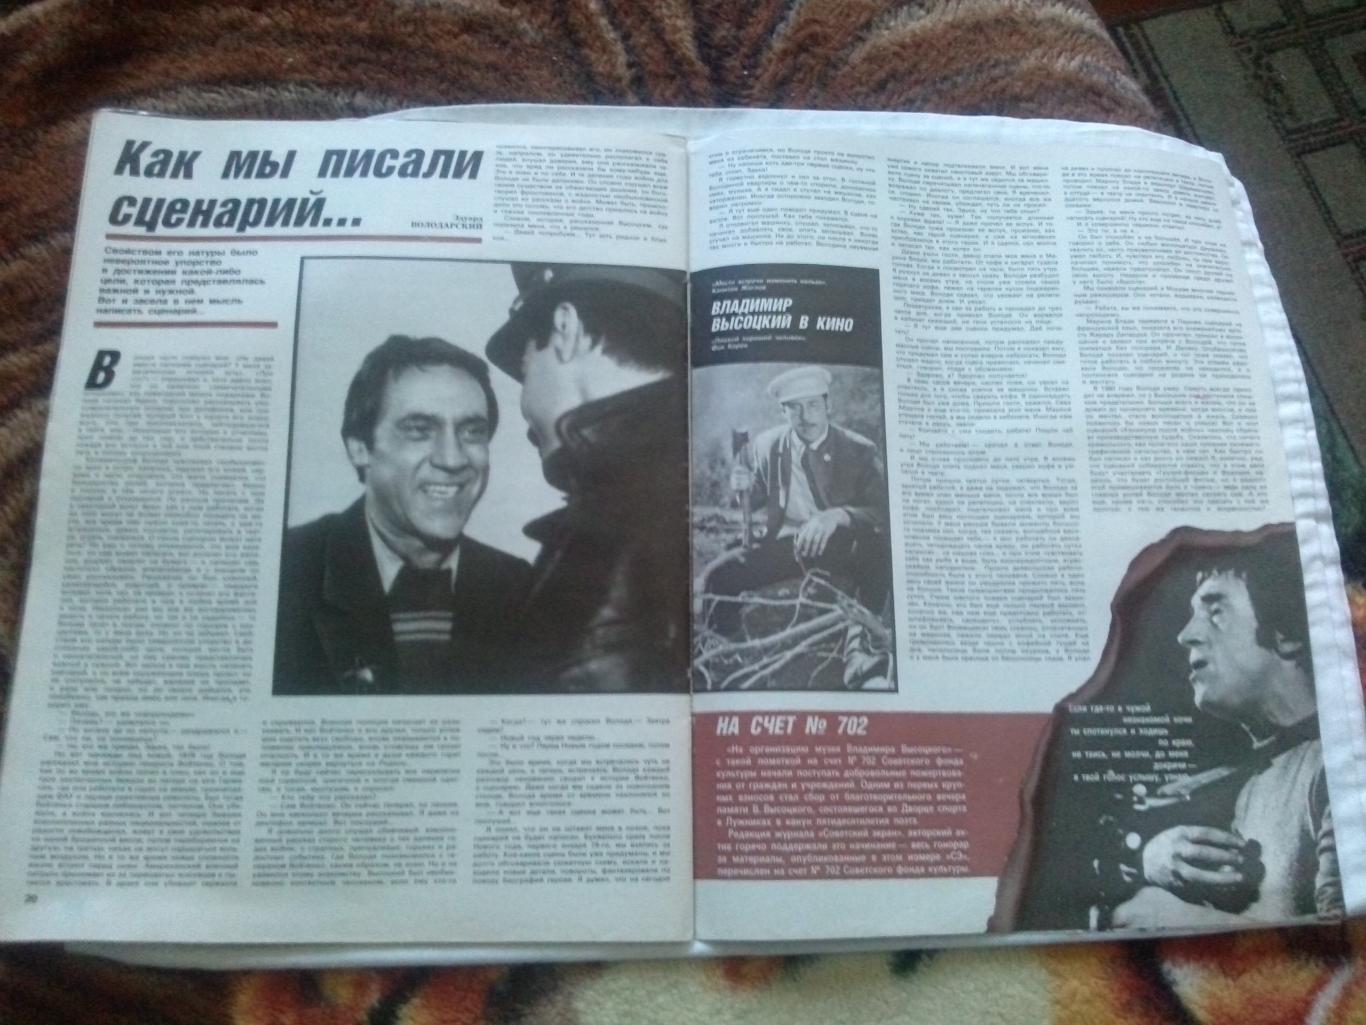 Журнал : Советский экран №3 (март) 1988 г. 50 - летию Владимира Высоцкого 6